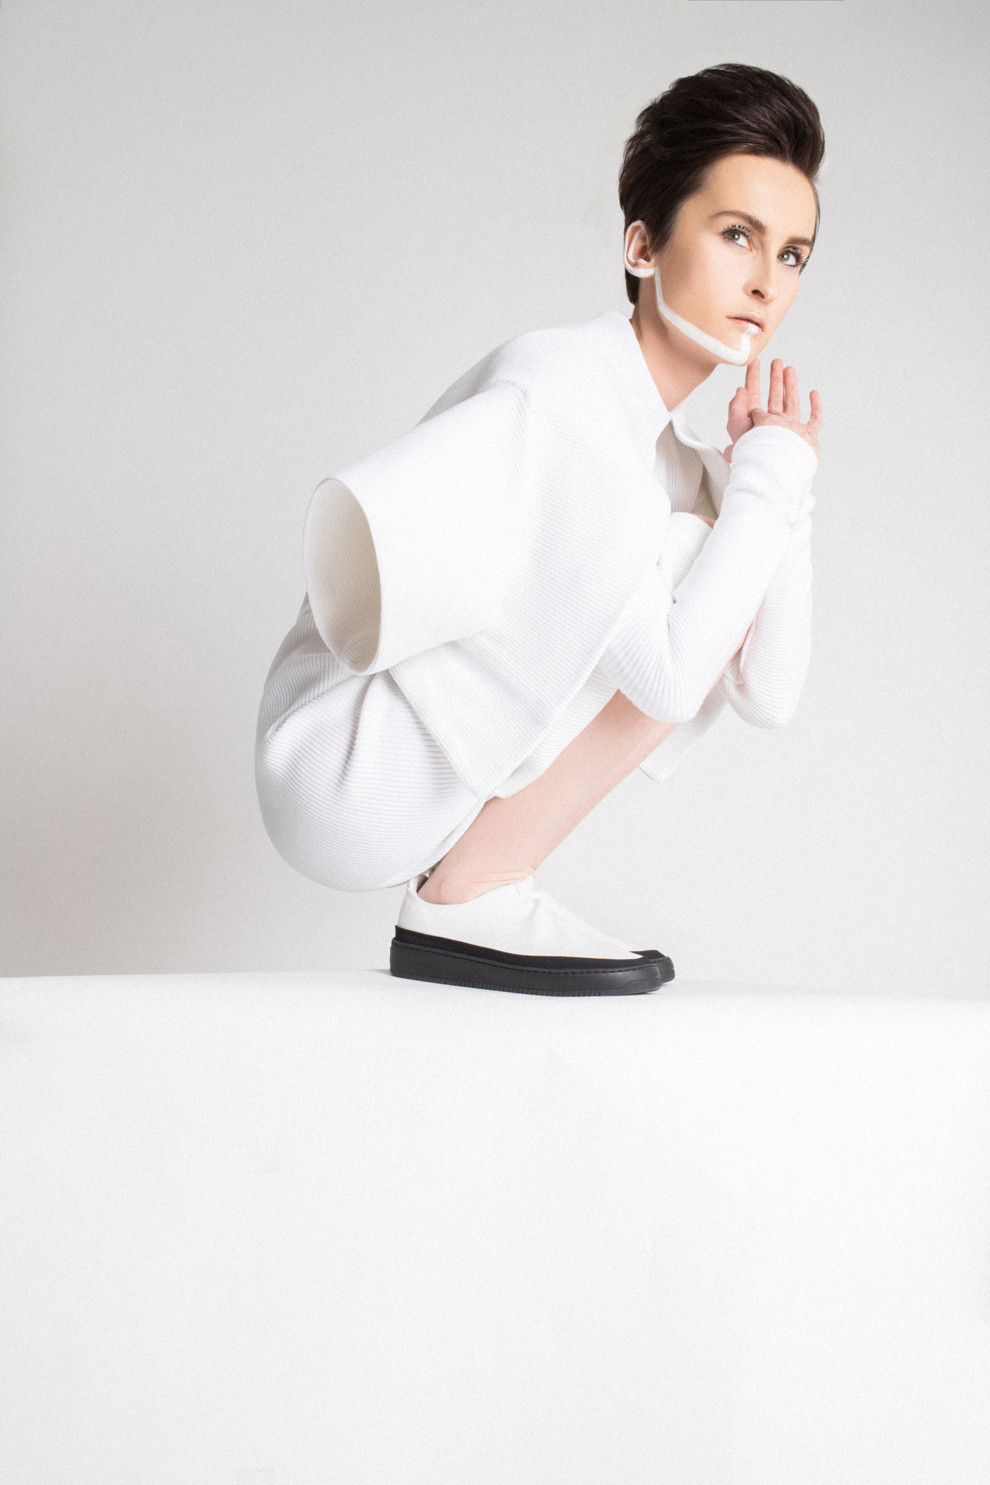 Катерина Павленко Го А Go_A Евровидение 2021 Vogue фотосессия